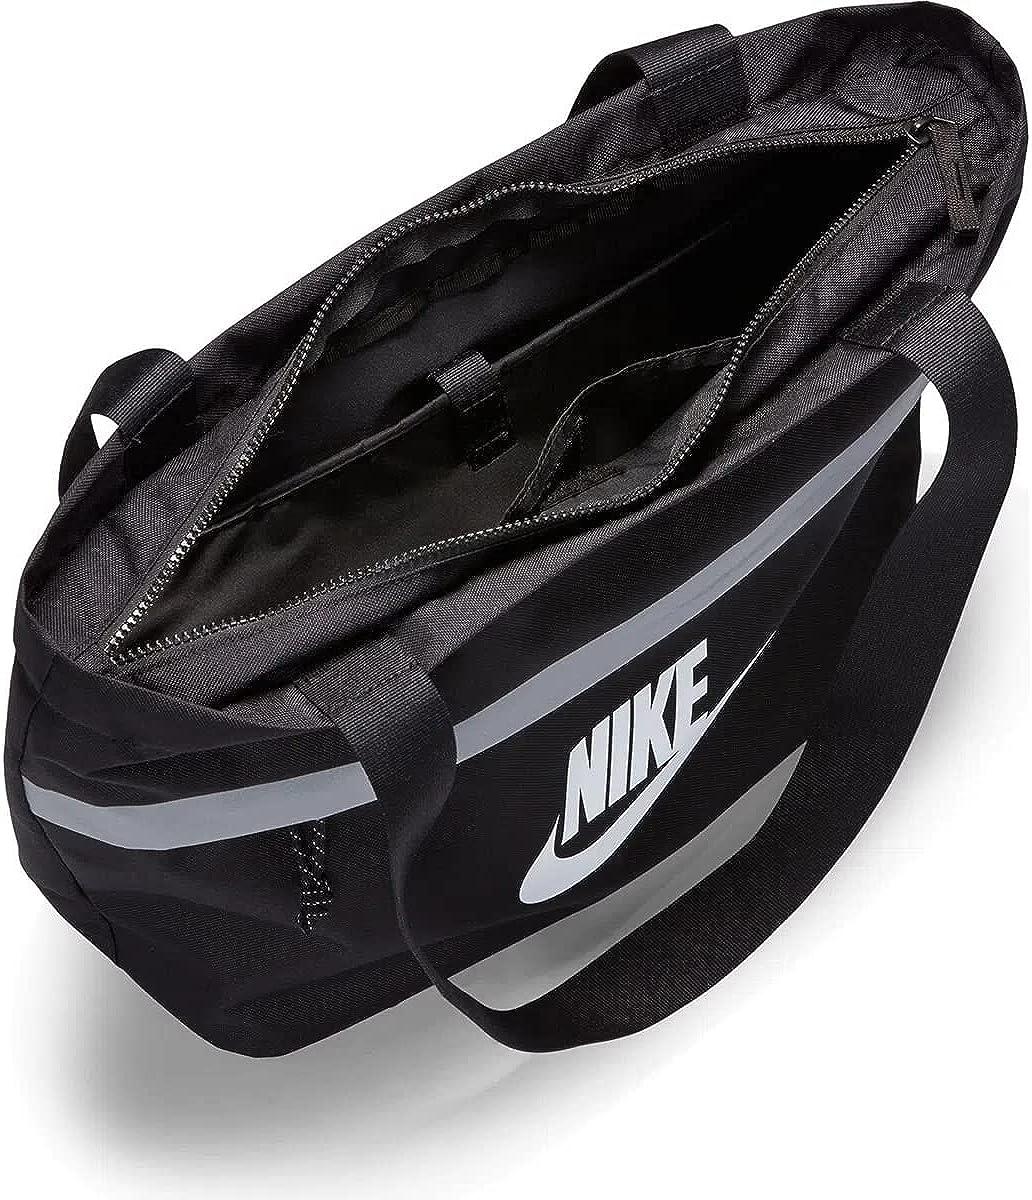 Nike One Tote Bag - Black/White